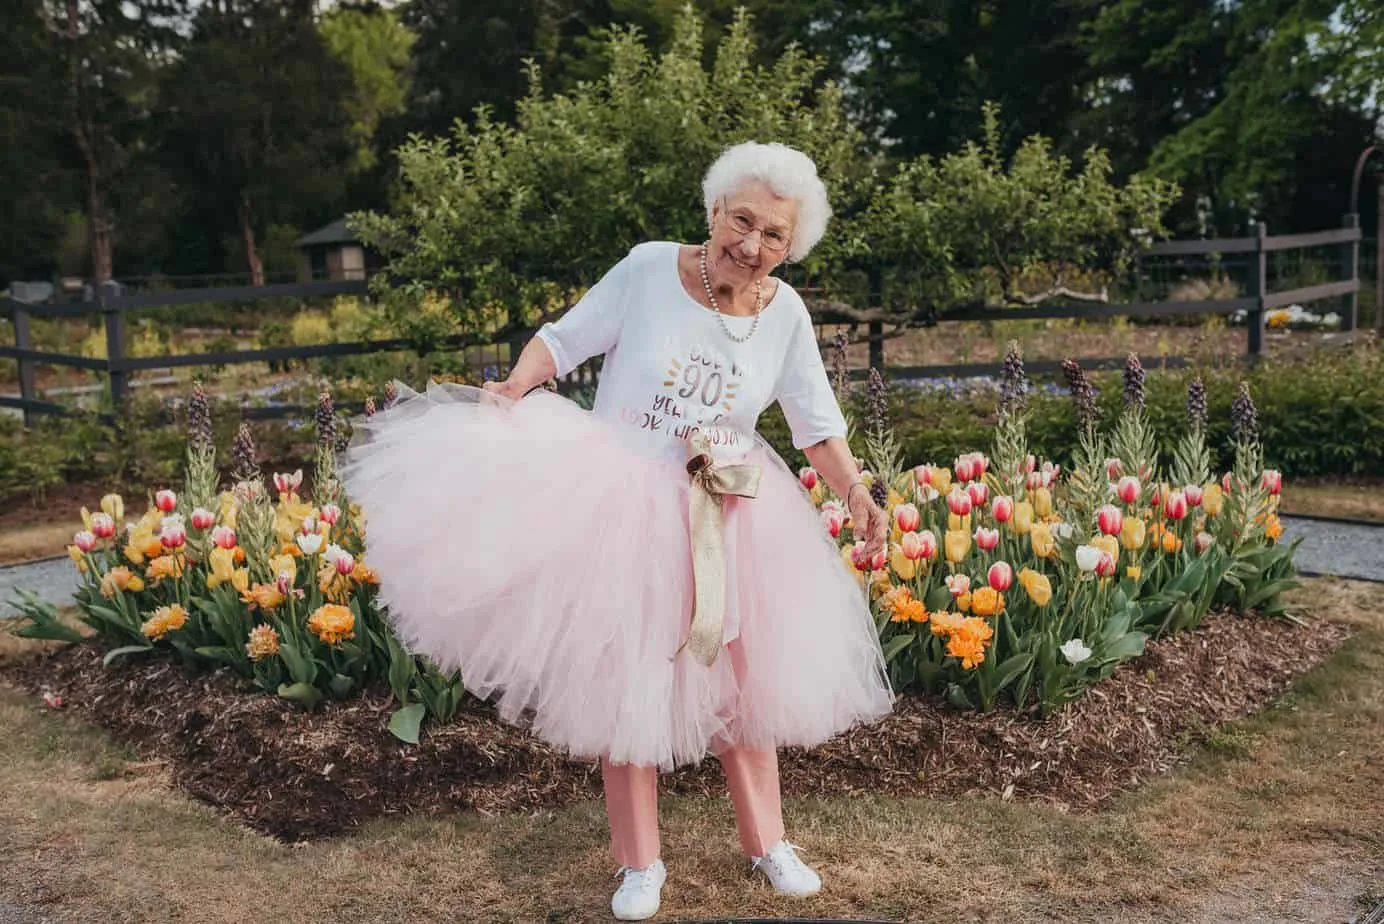 A grandma wearing a pink tutu